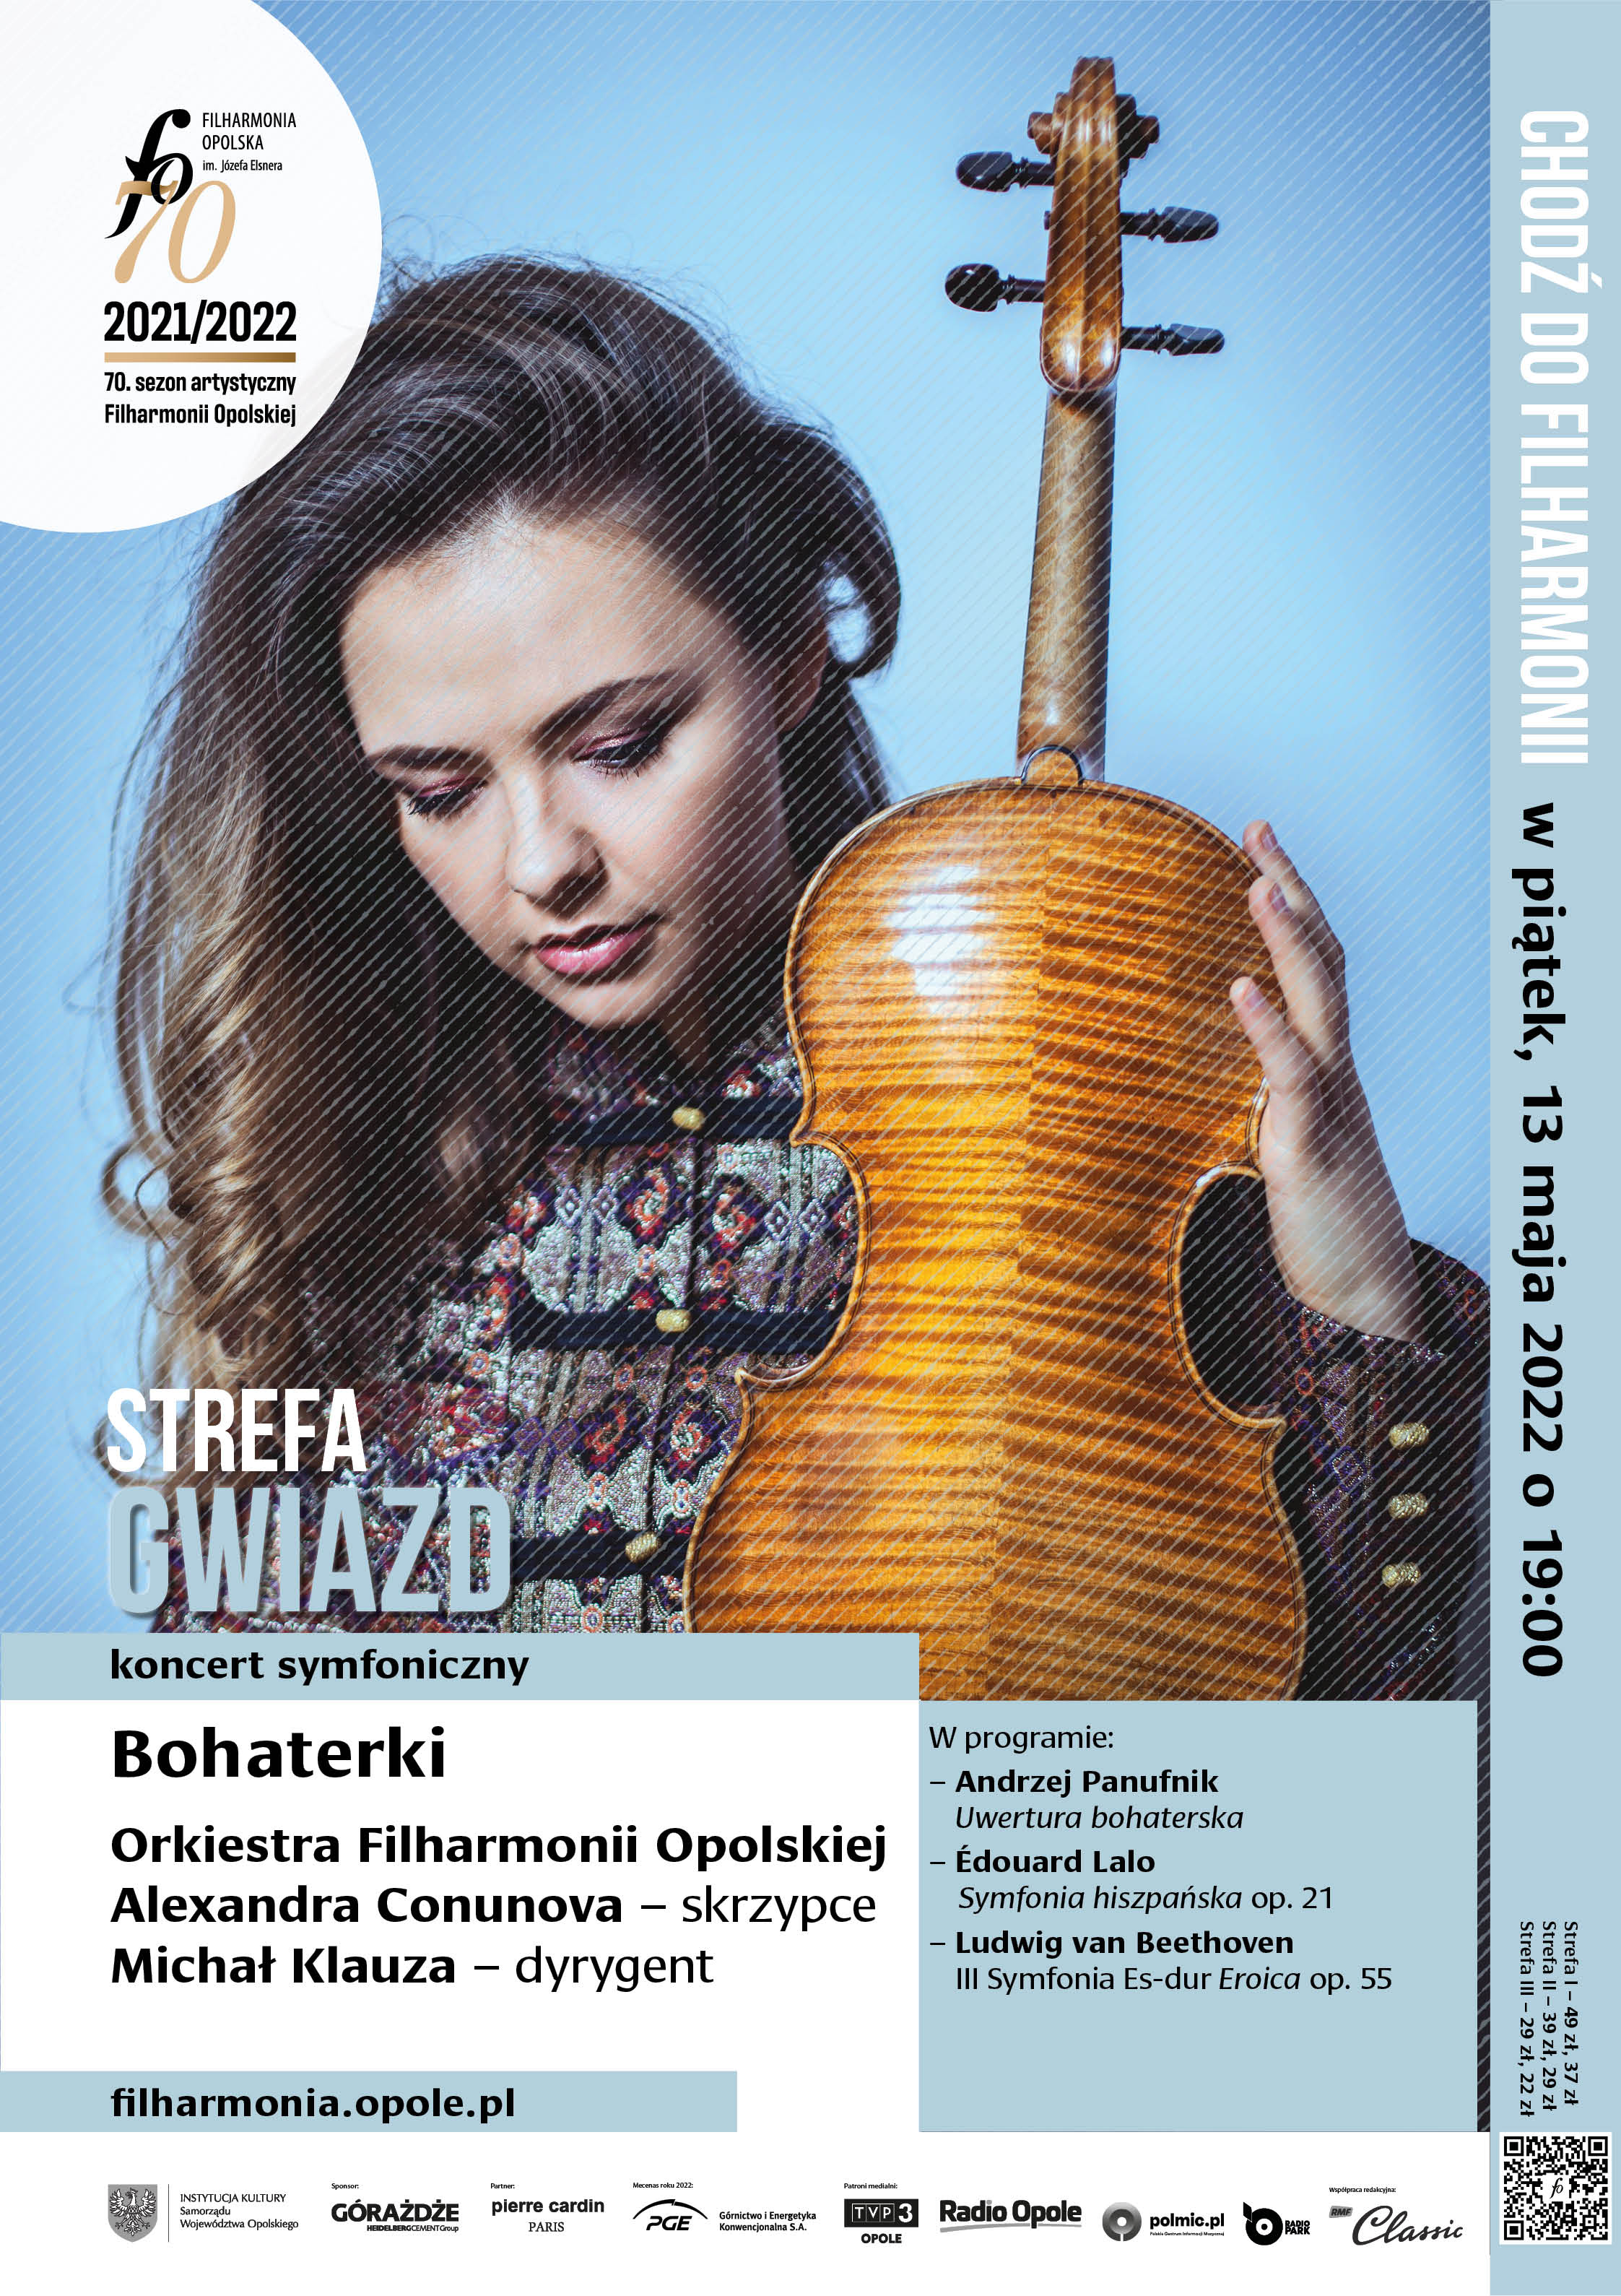 Kolejny koncert z cyklu Strefa Gwiazd w Filharmonii Opolskiej już w najbliższy piątek